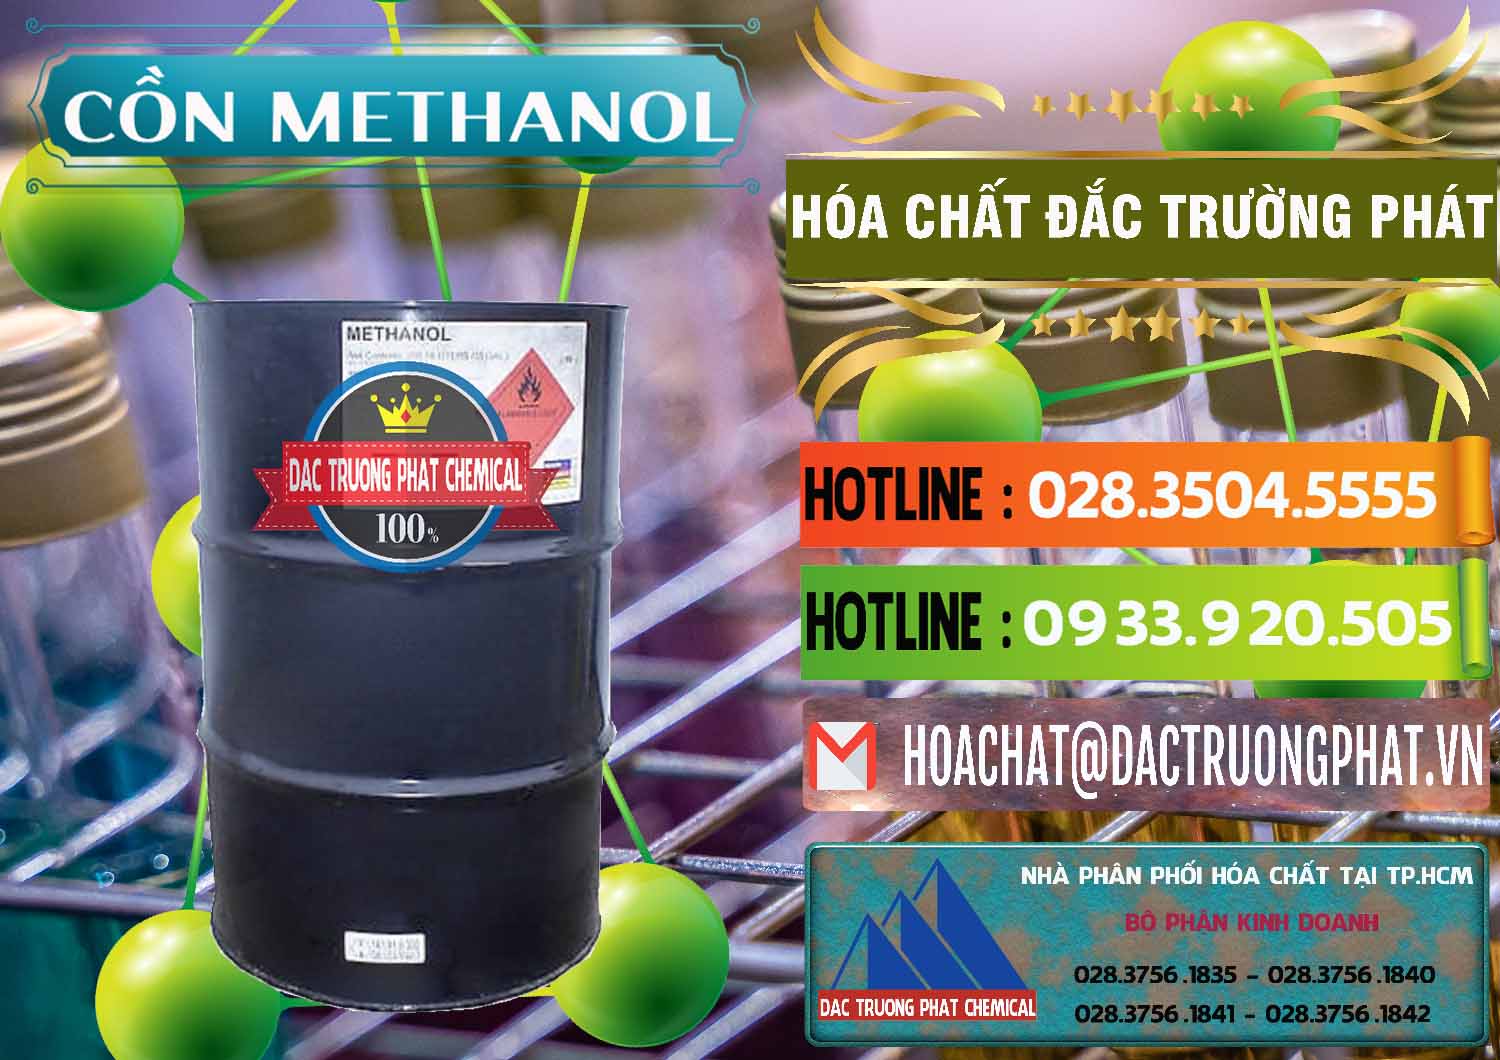 Cty nhập khẩu - bán Cồn Methanol - Methyl Alcohol Mã Lai Malaysia - 0331 - Cty chuyên bán và cung cấp hóa chất tại TP.HCM - cungcaphoachat.com.vn